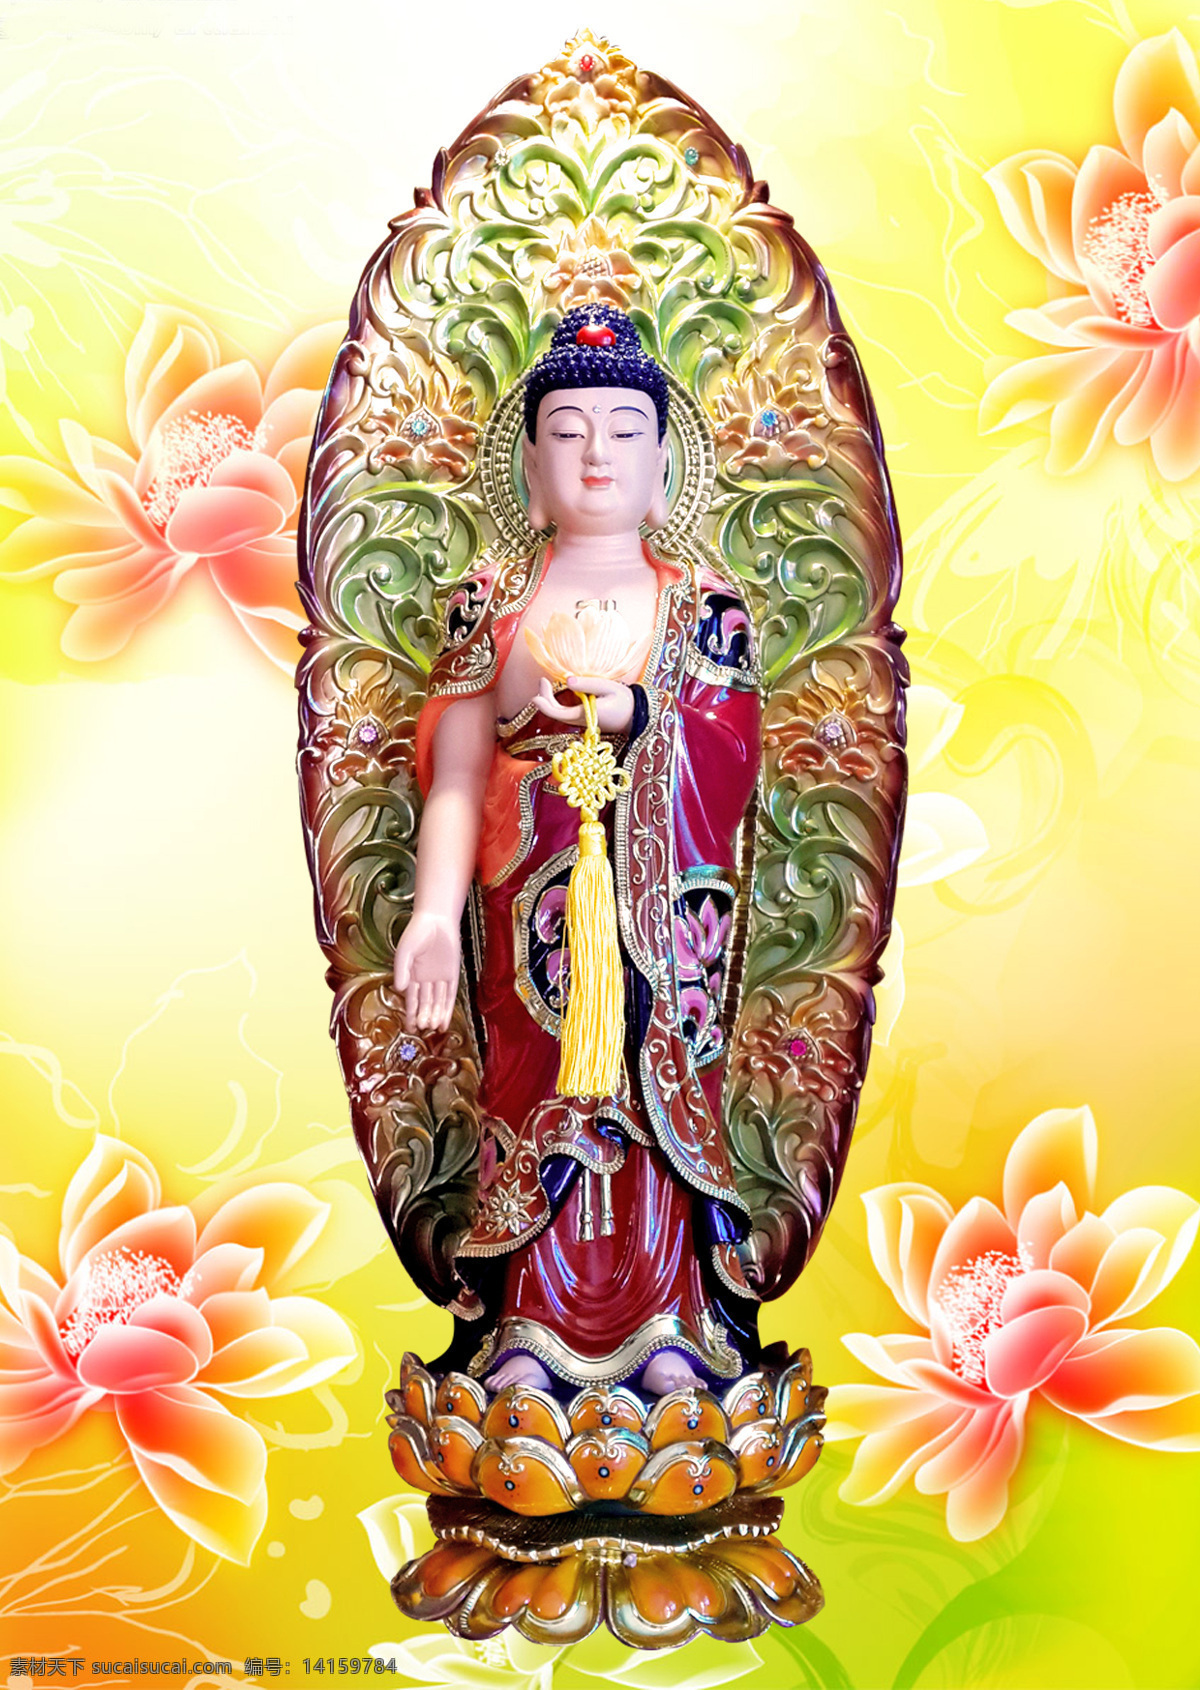 阿弥陀佛 接引 西方三圣 佛教 信仰 庄严 清净 文化艺术 宗教信仰